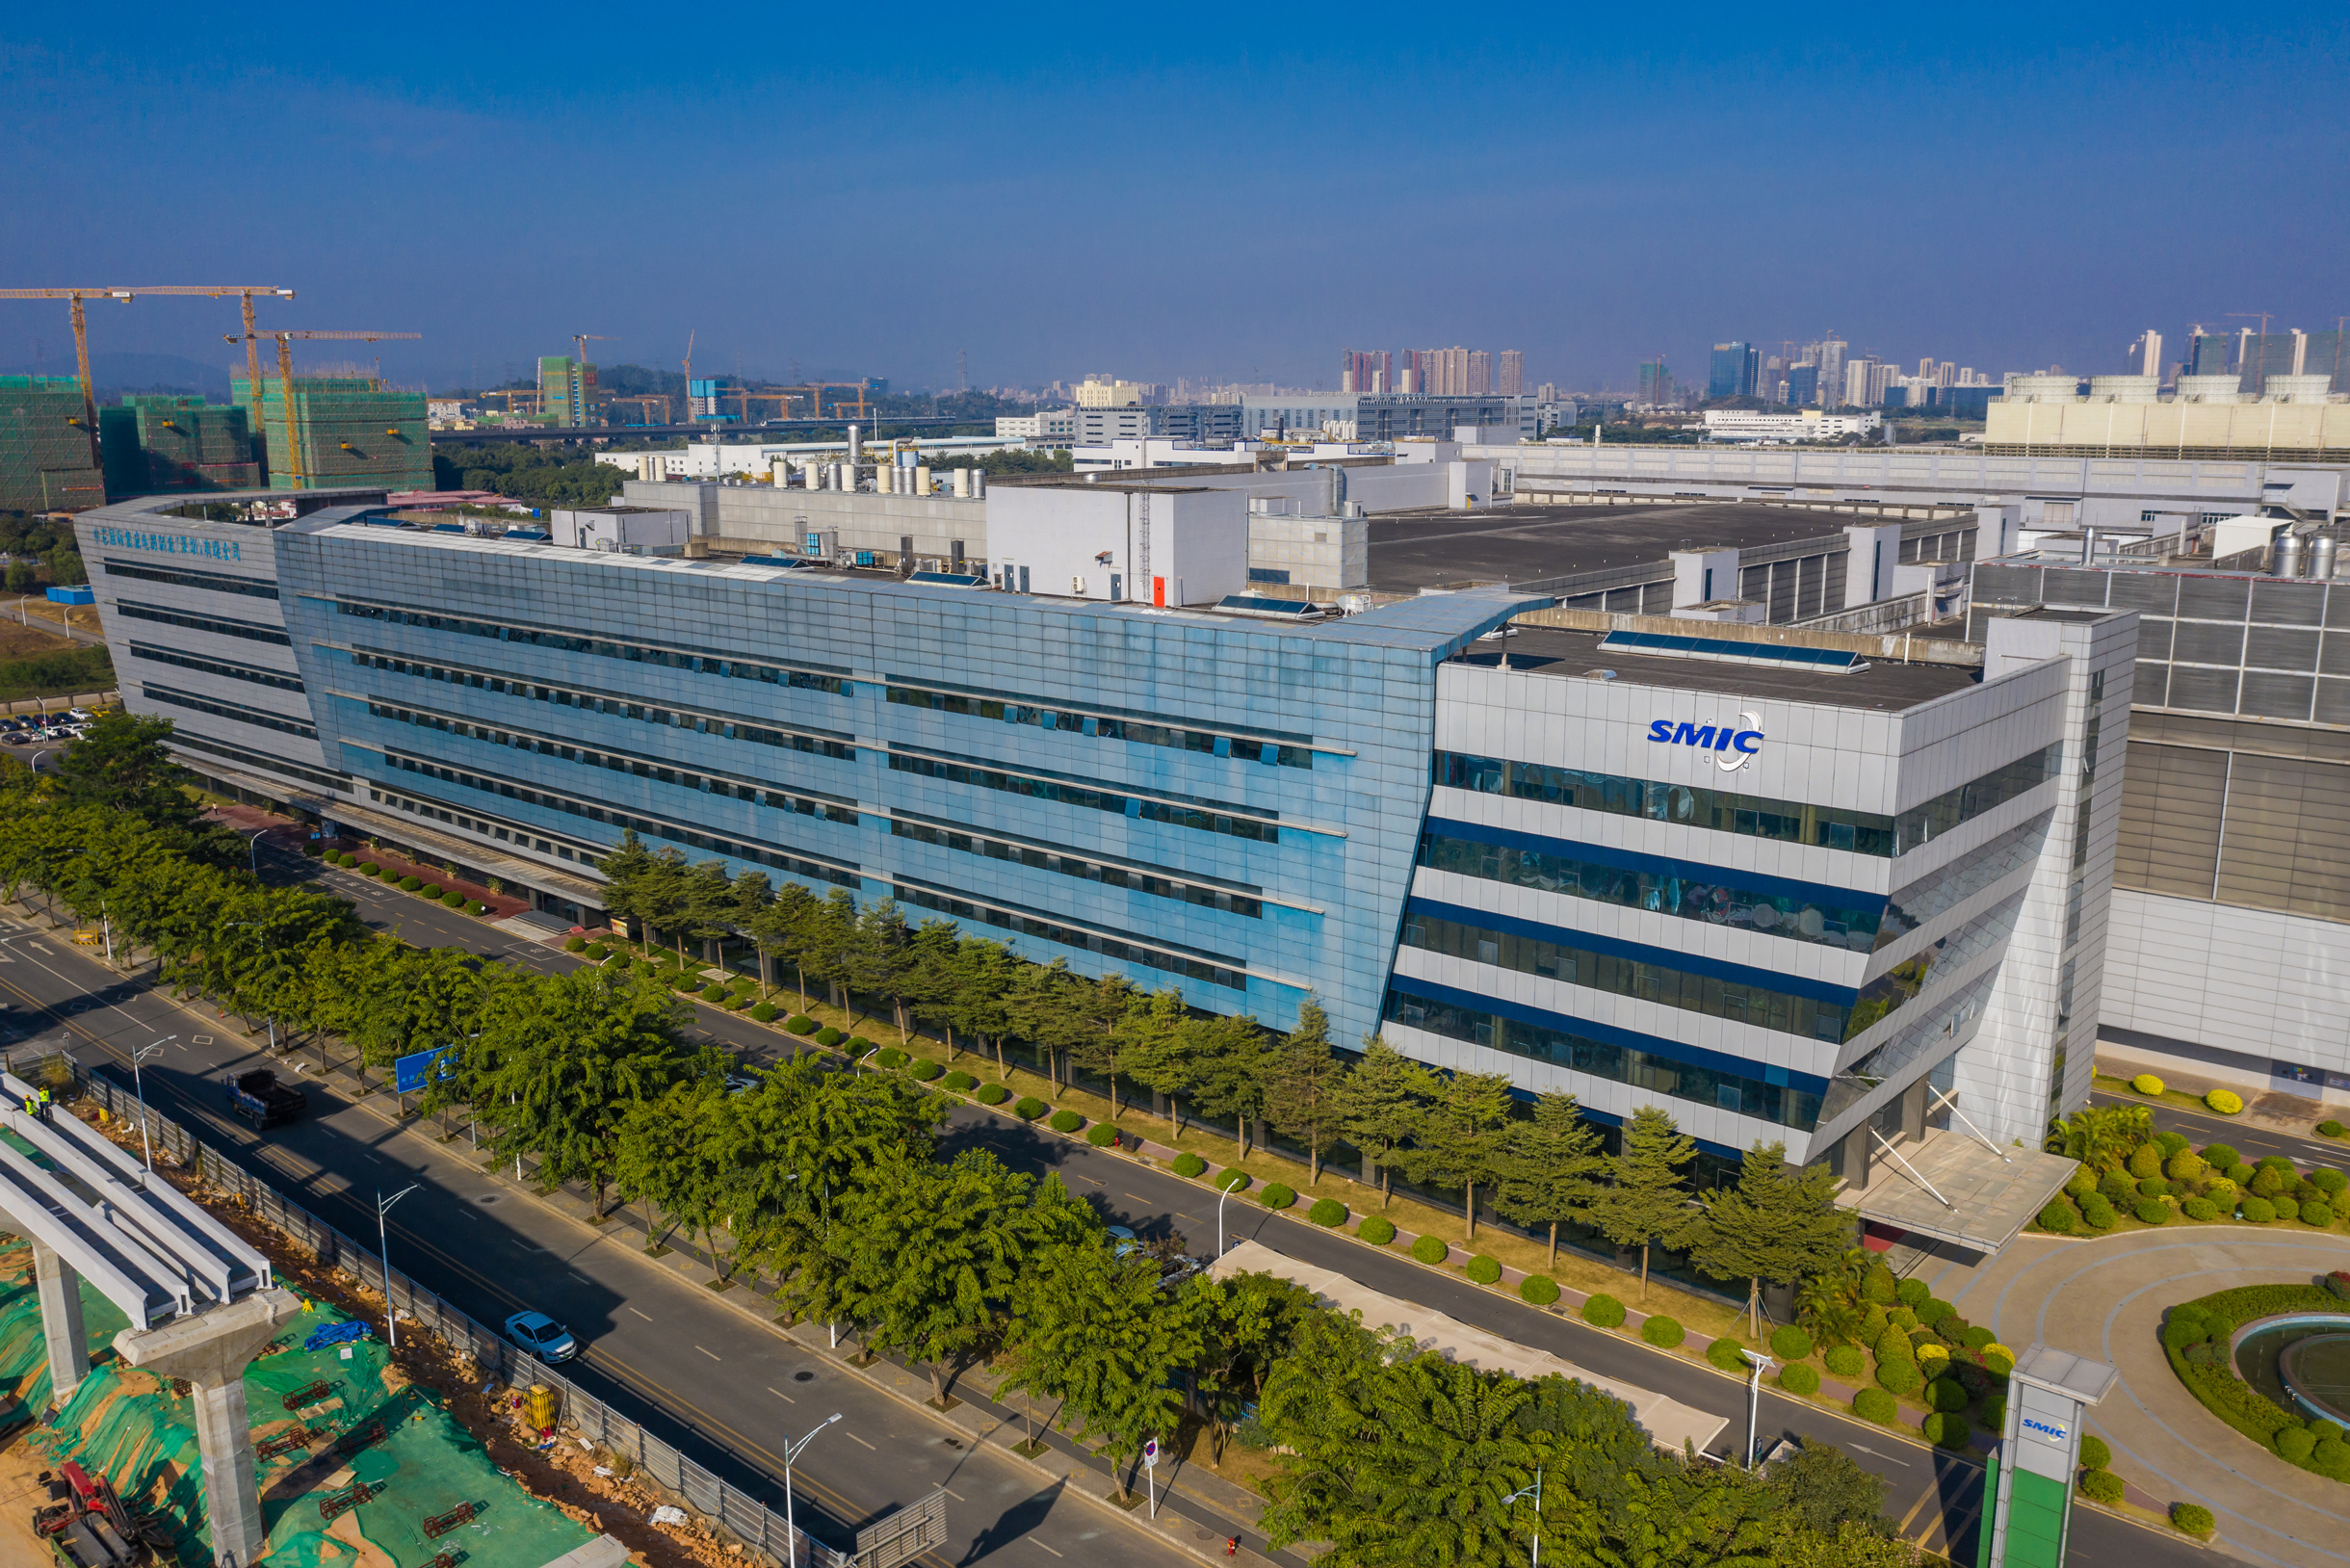 Филиал SMIC в Шэньчжэне, Китай, 2020 год. Фотография: Liang Xiashun / VCG via Getty Images